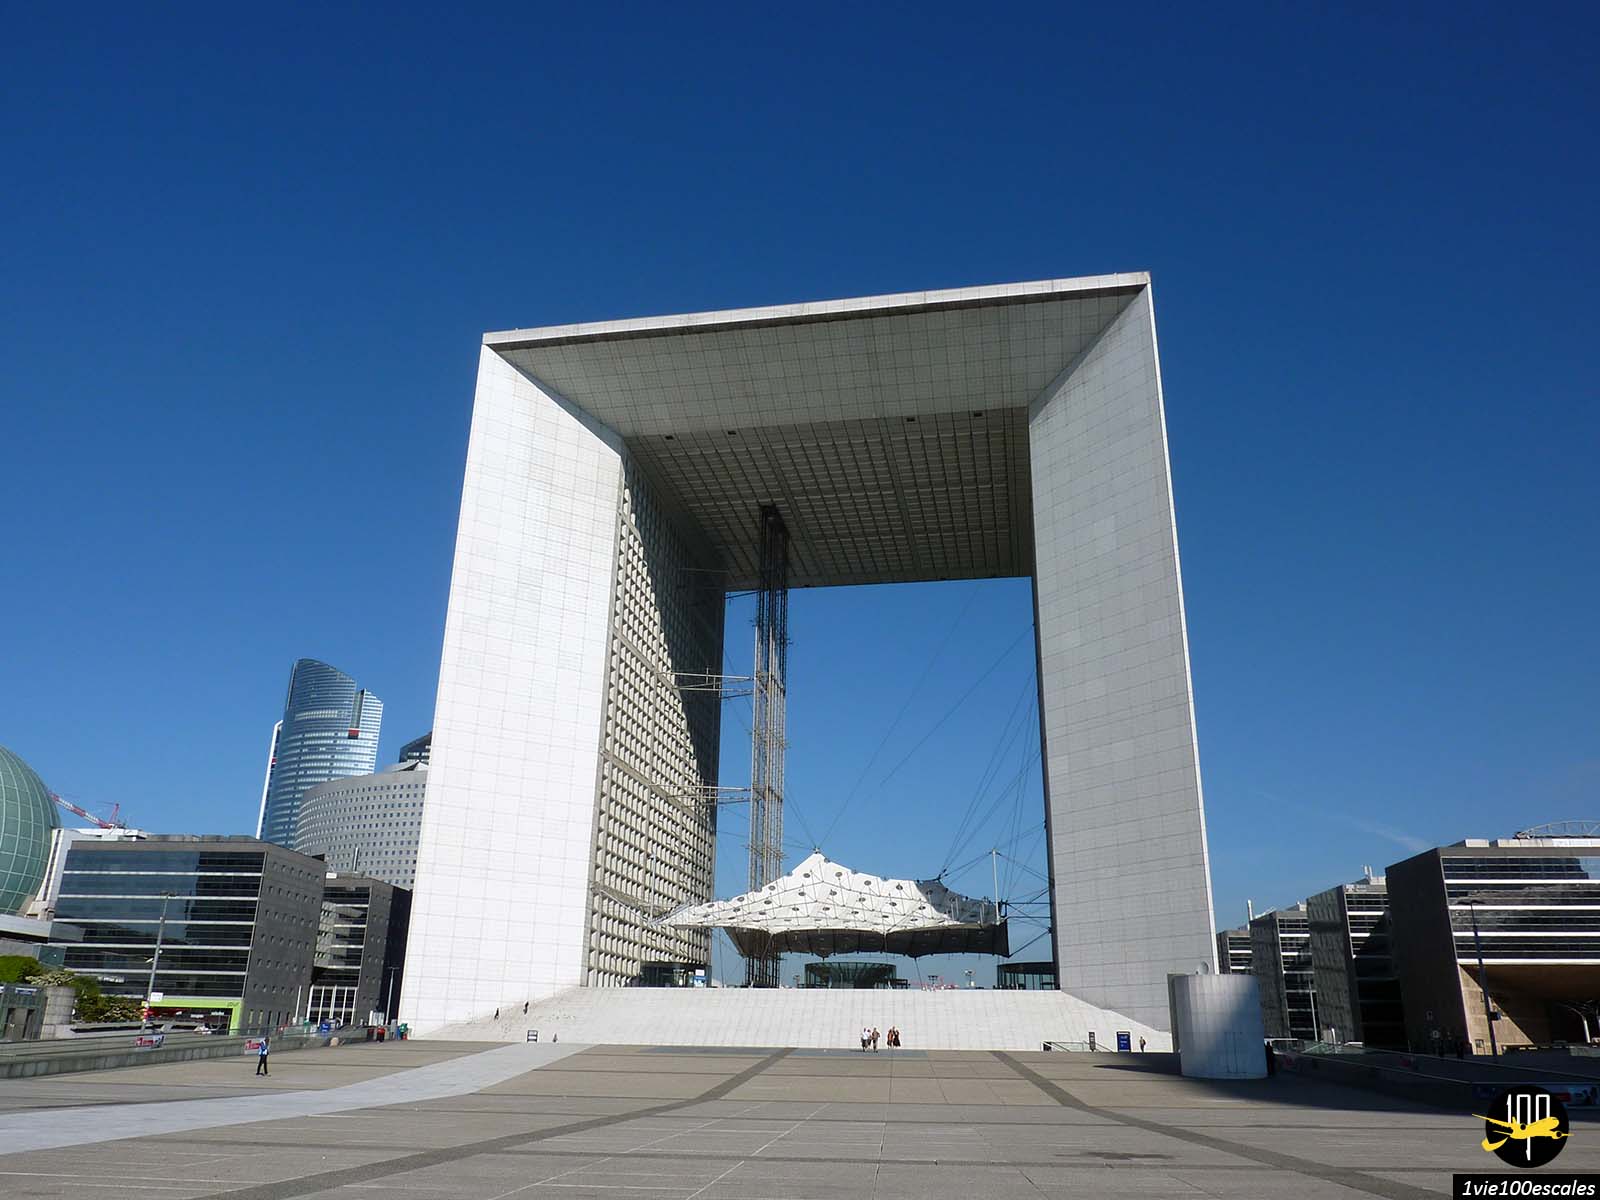 Au cœur du quartier d'affaires de la Défense, à Paris, trône une grande arche à l'architecture surprenante